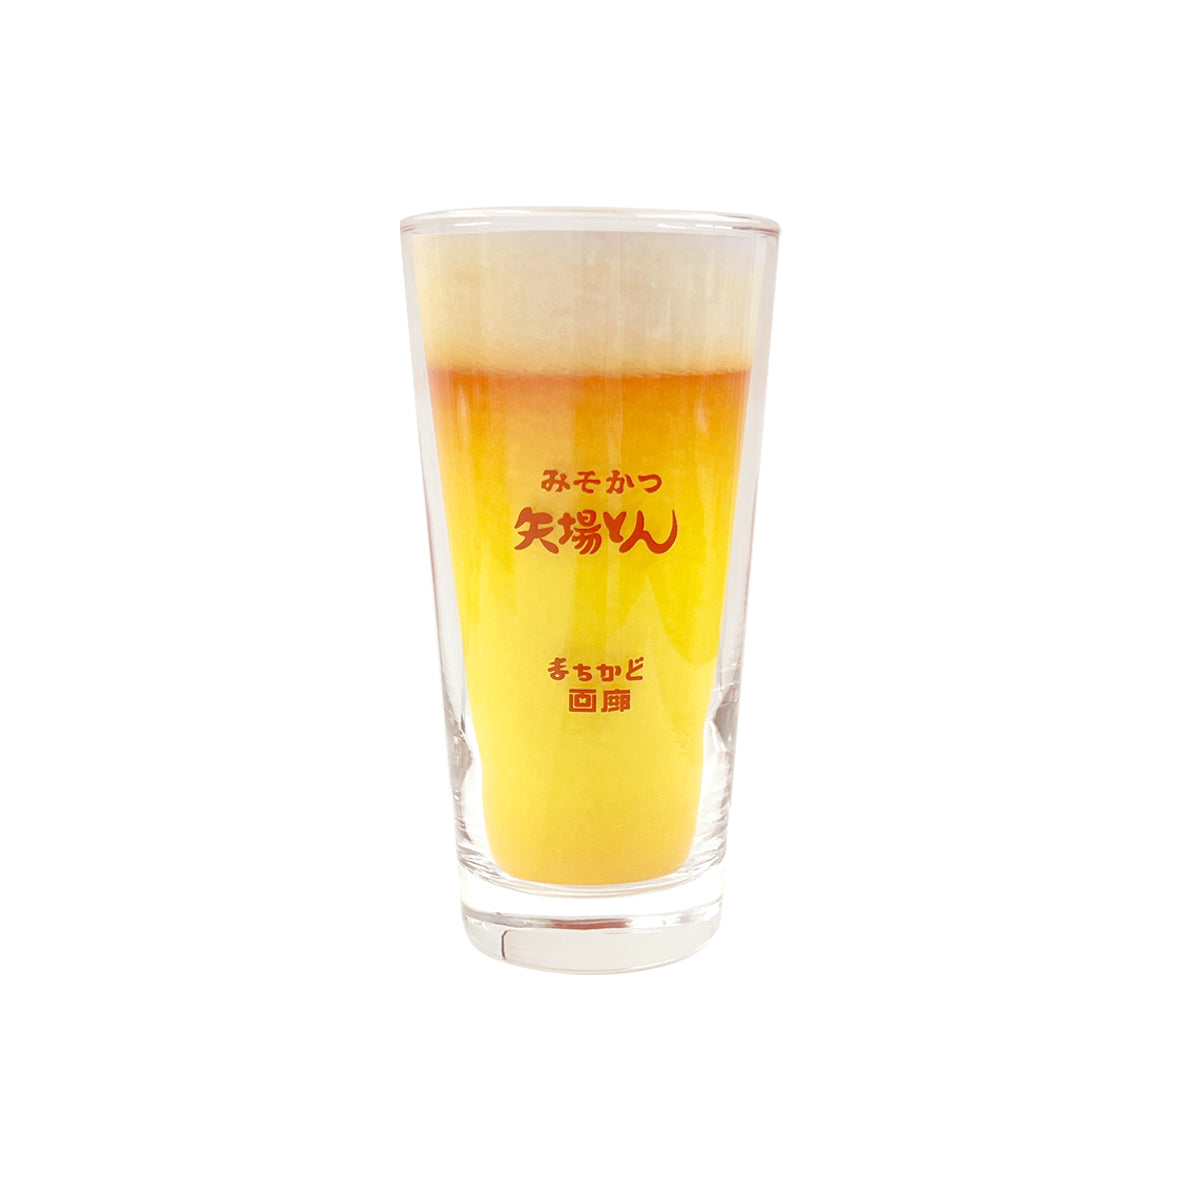 Yabaton Buchan Beer Glass